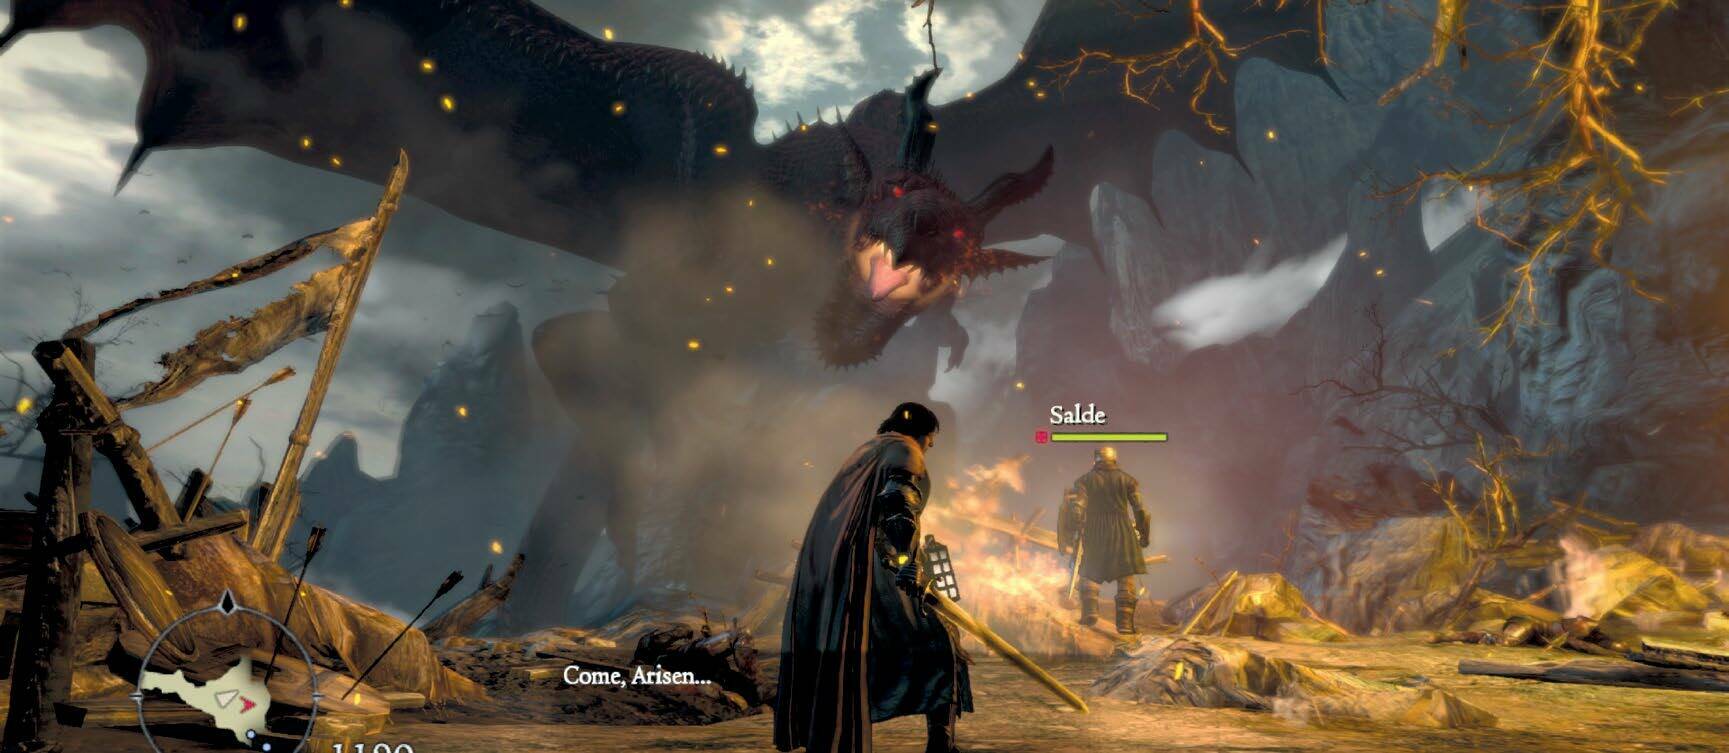 Capcom, 2012, Windows, Xbox 360 and PS3 2012 年，主机端发售了《龙之信条》，2013 年发售了黑暗觉醒版*，直到 2016 年，Capcom 才把该游戏移植到 PC 平台上 * 译者注：《龙之信条：黑暗觉醒》（Dragon‘s Dogma: Dark Arisen）作为前作《龙之信条》的加强版本，游戏中基本上除了将会收录前作所有要素之外，还将会以全新场景『黑咒岛』作为冒险新舞台，并追加许多新的地图、任务、武器、防具与动作，在之前备受玩家们好评的人物创建部分，也会追加更多新的细节让玩家们来选用。